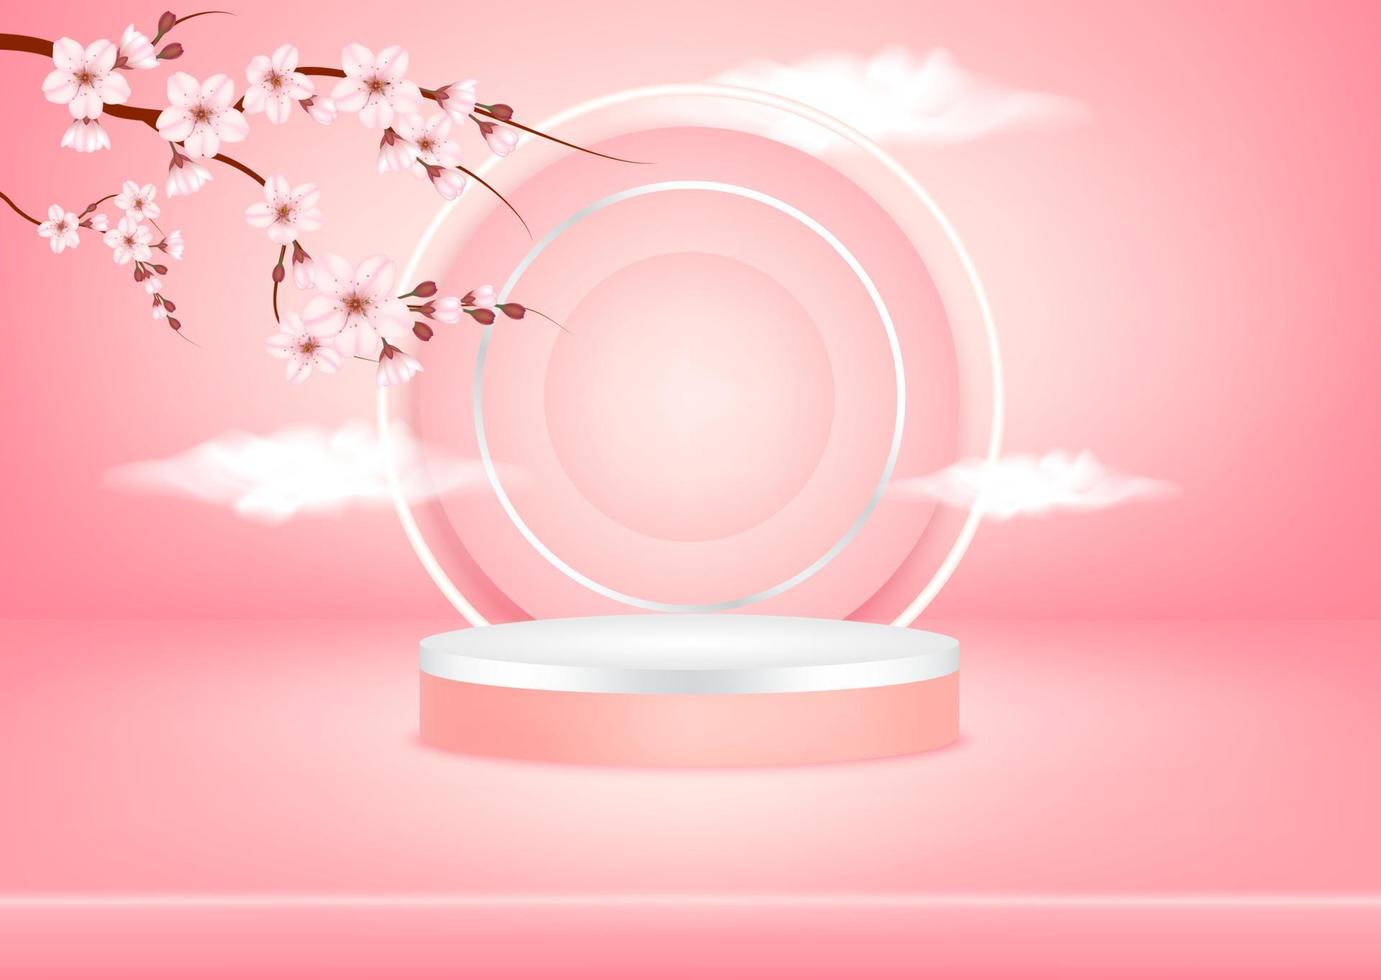 cena de pódio de fundo de estúdio rosa abstrato com plataforma geométrica de folha, espelho refletindo as nuvens do céu e sakura para produto cosmético. ilustração em vetor 3D. conceito de estilo minimalista de arte.